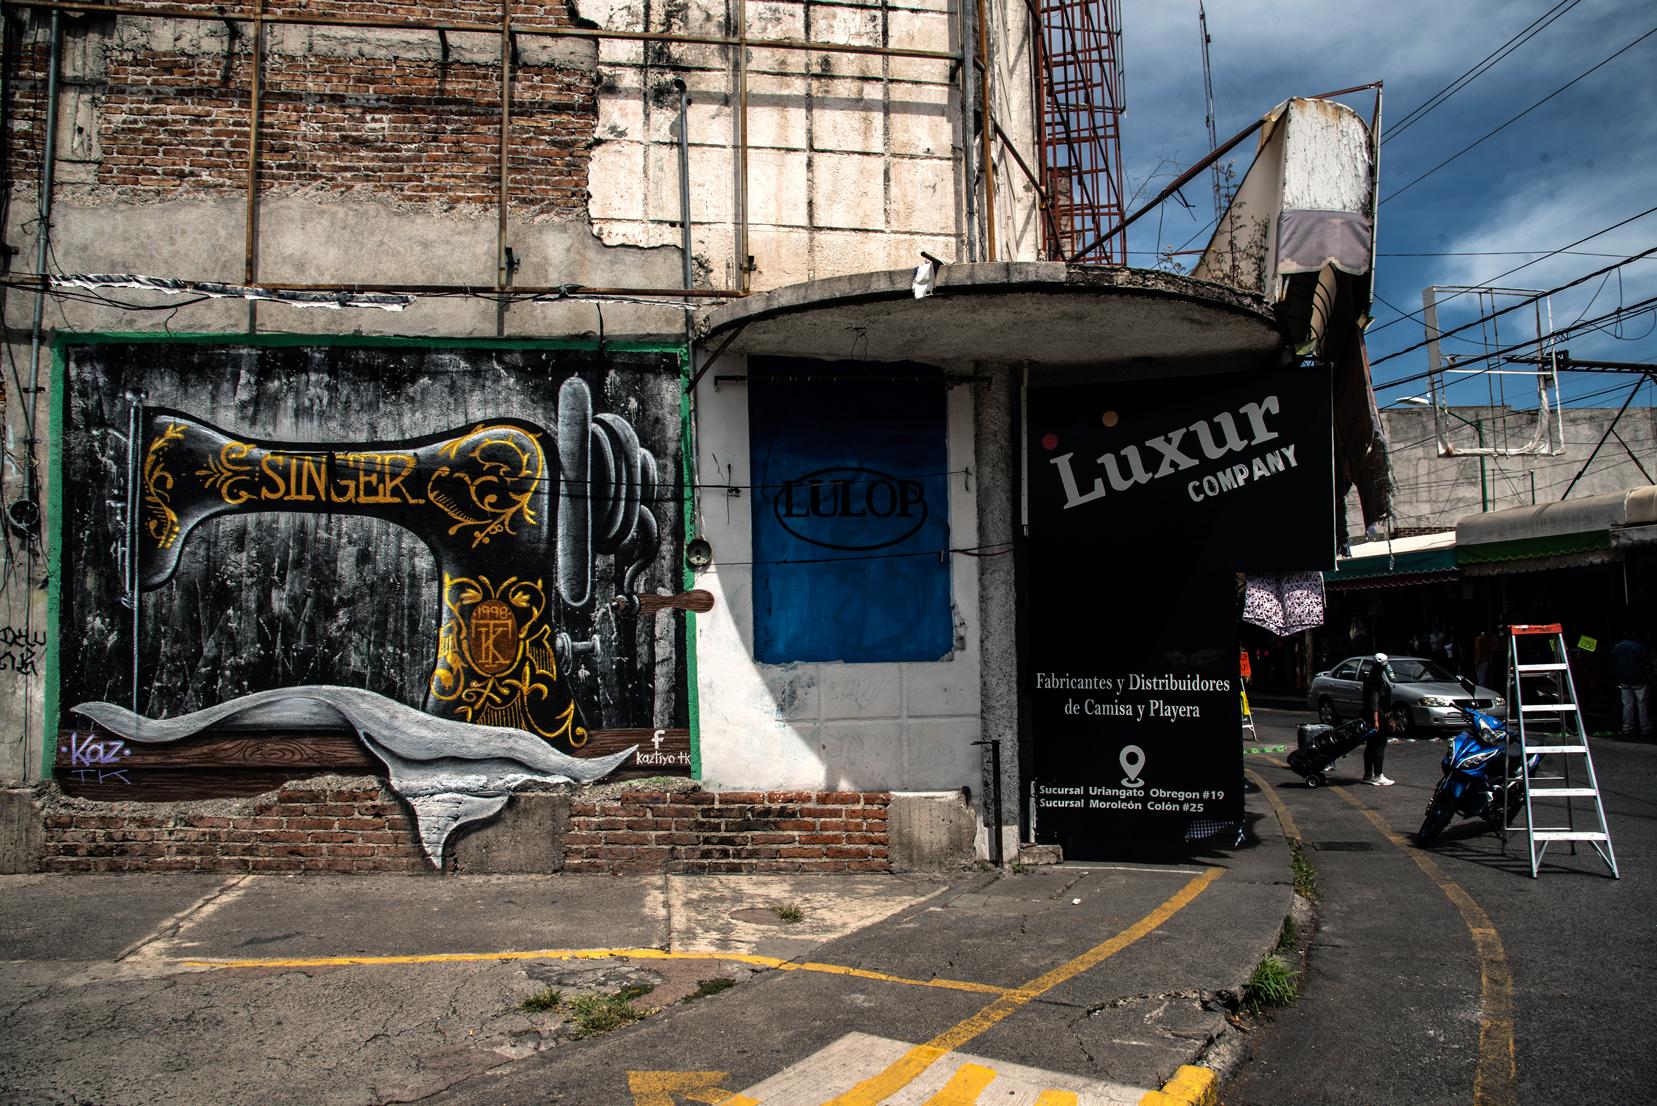 Fachada de un edificio con un mural de una máquina 'Singer' y un local de fabricación y distribución de camisas y playeras